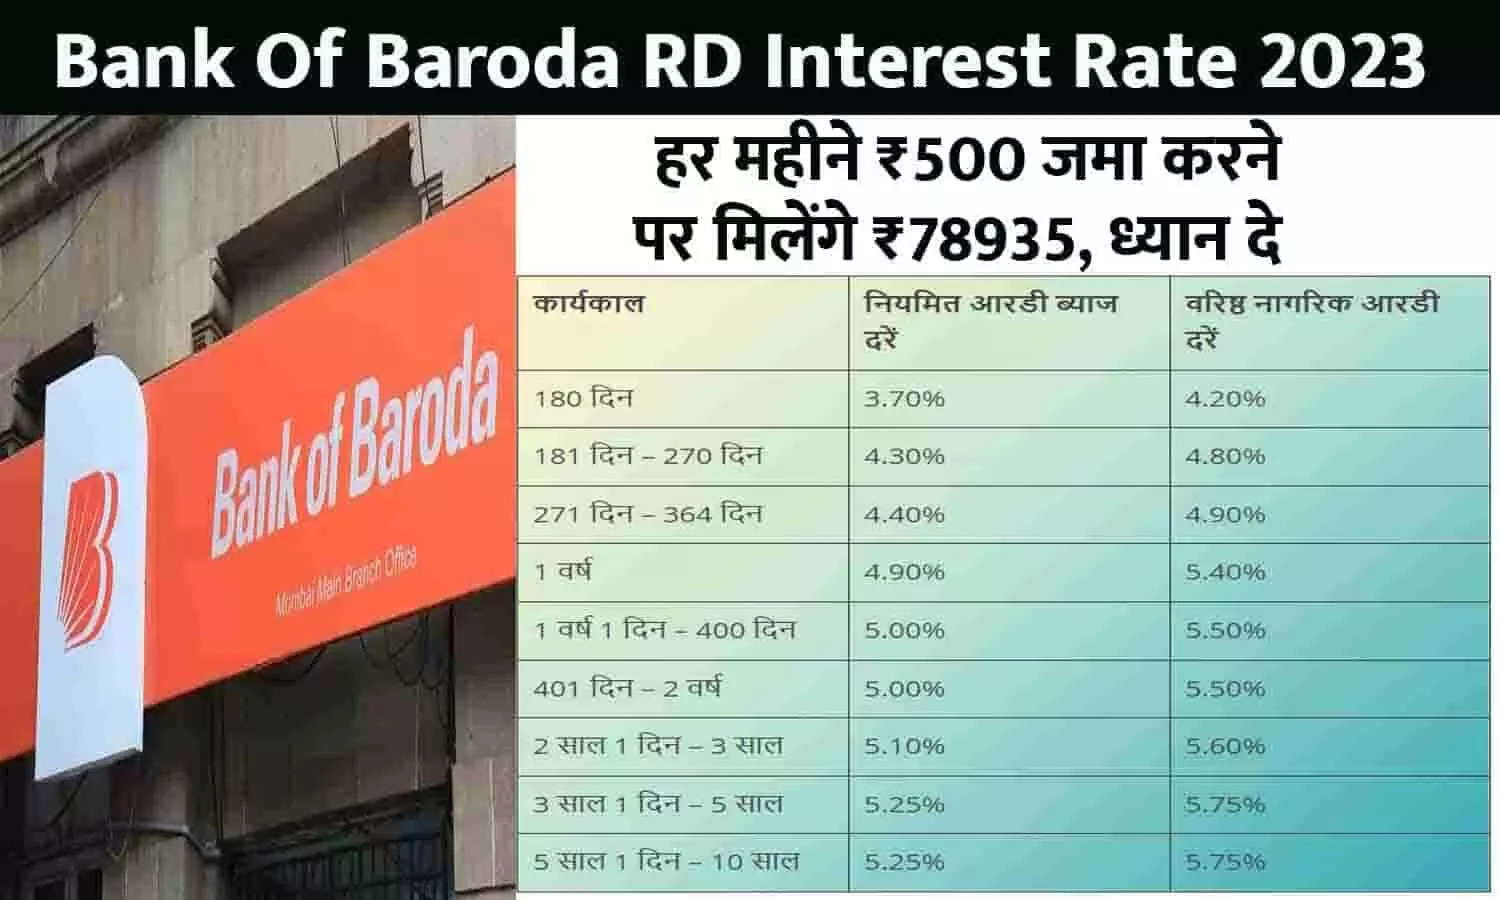 Bank Of Baroda RD Interest Rate 2023: हर महीने ₹500 जमा करने पर मिलेंगे ₹78935, ध्यान दे